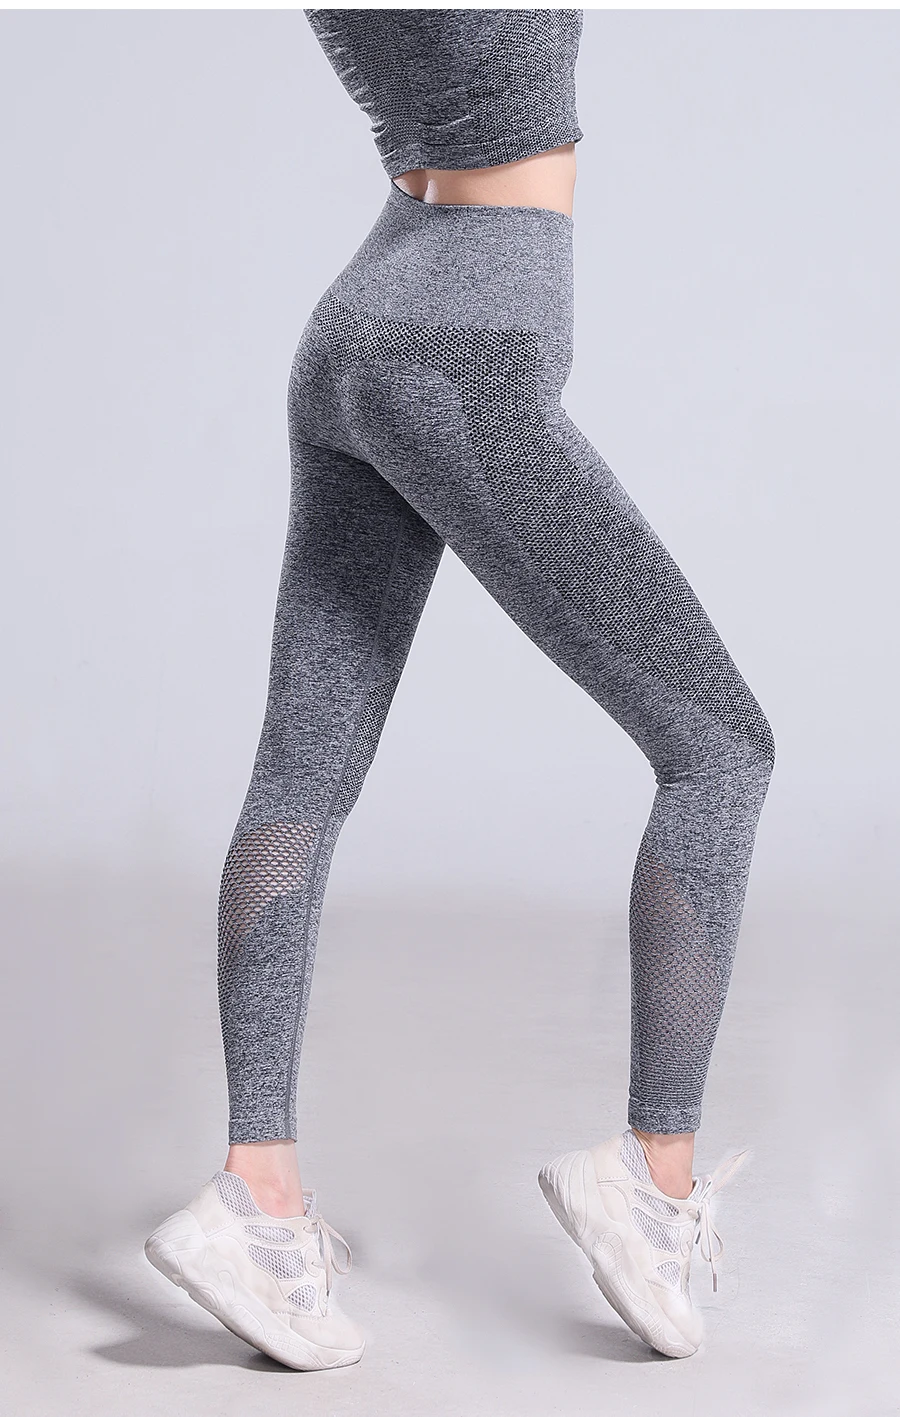 Штаны для йоги, новые сетчатые сшитые хип-хоп спортивные штаны для фитнеса, сексуальные подчеркивающие бедра леггинсы, бесшовные леггинсы для спортзала с акулой